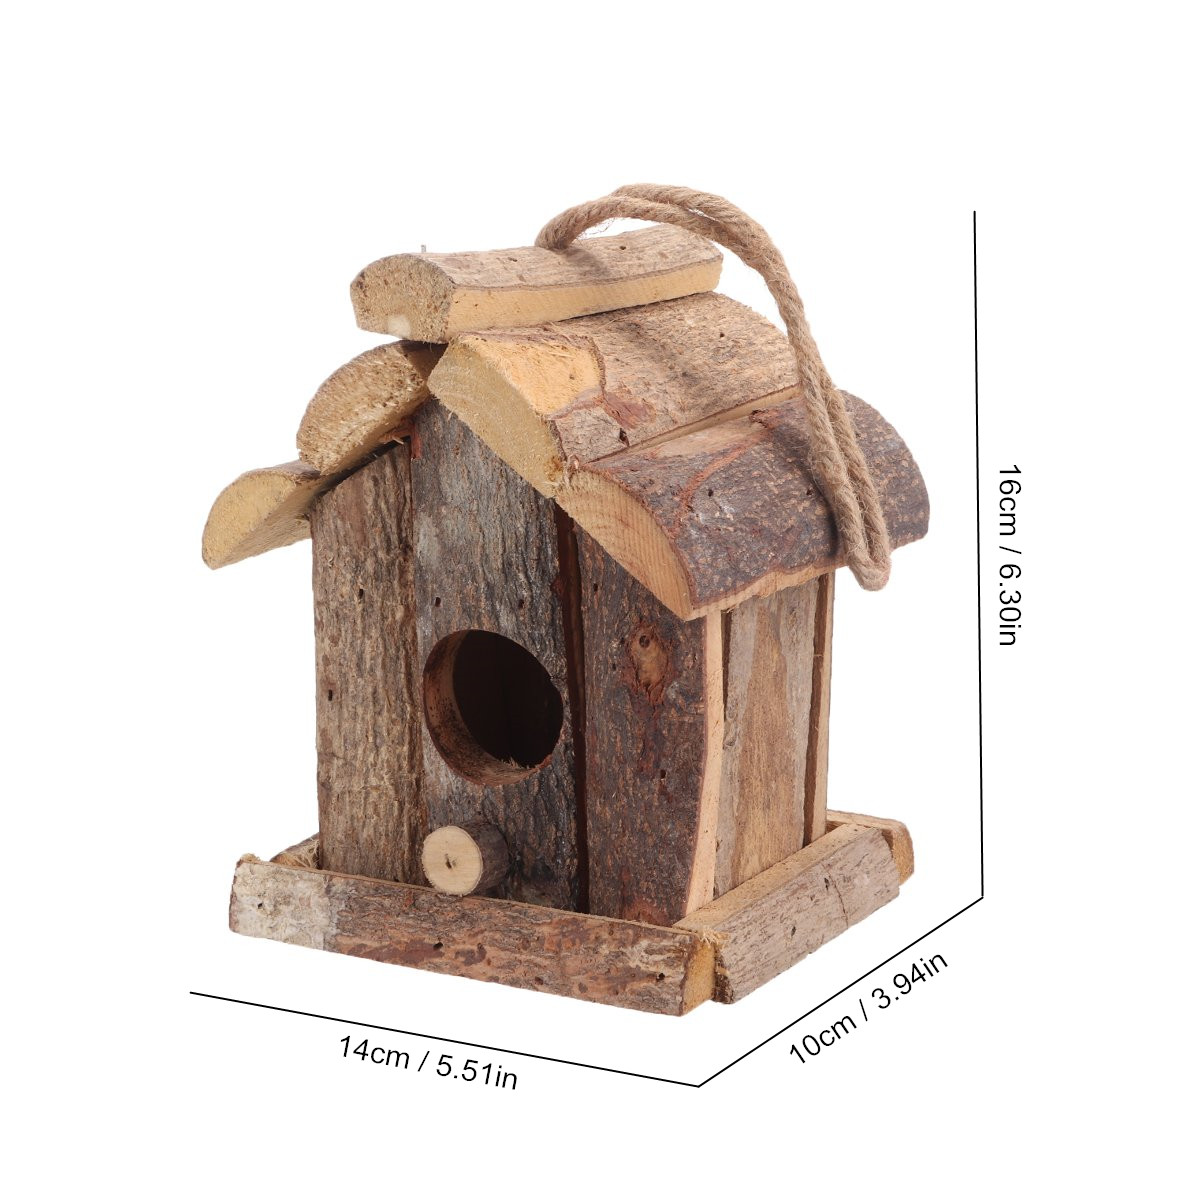 Vintage-Wooden-Bird-House-Nesting-Box-Small-Wild-Birds-Nest-Home-Garden-Decoration-1725292-4